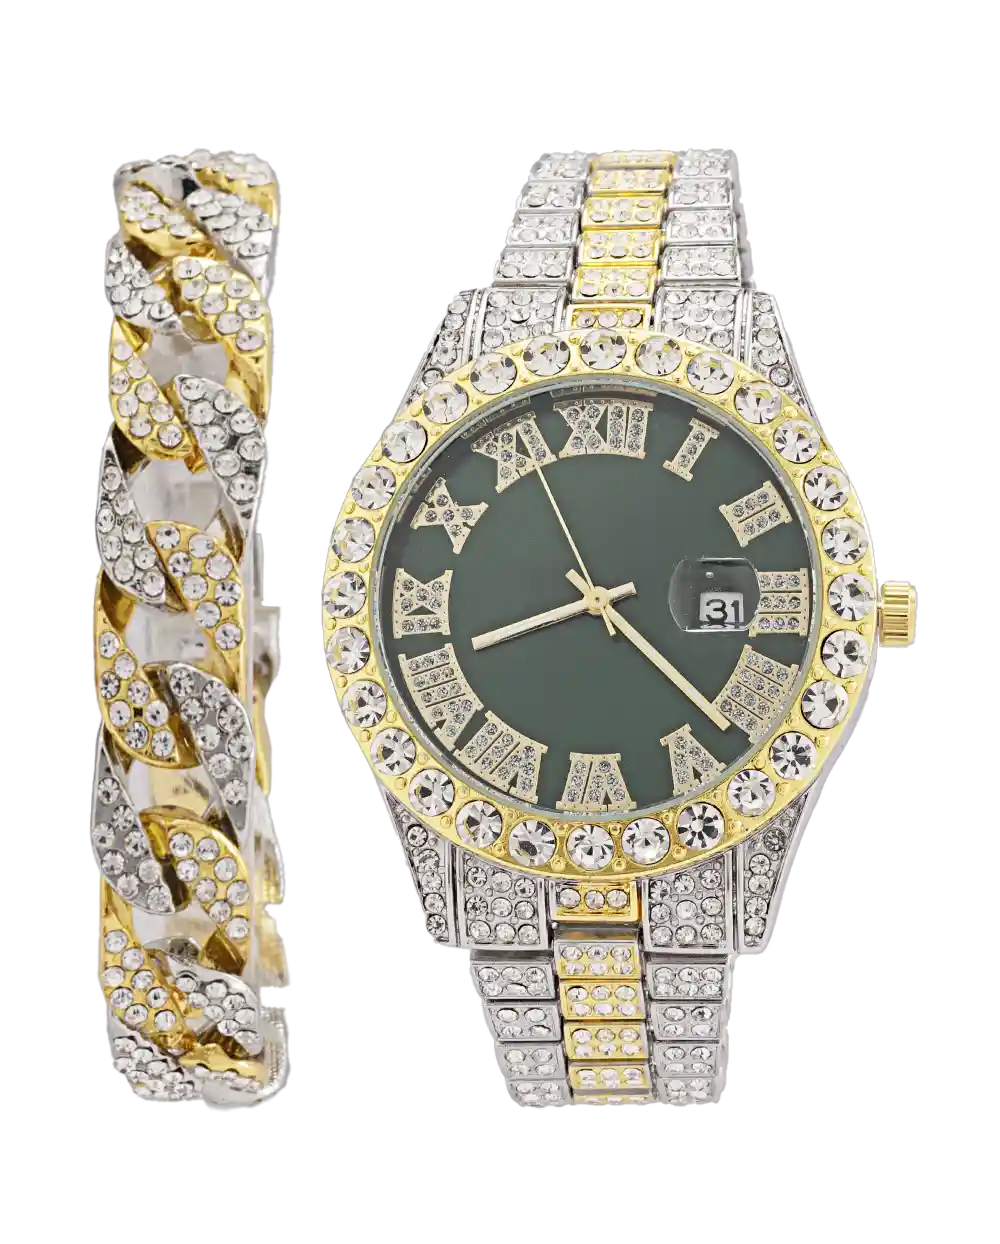 خرید ست ساعت مچی و دستبند مردانه فول نگین رولکس ROLEX مدل 1804 نقره ای طلایی قیمت 650 هزارتومان با دستبند فول نگین به همراه جعبه و ارسال رایگان